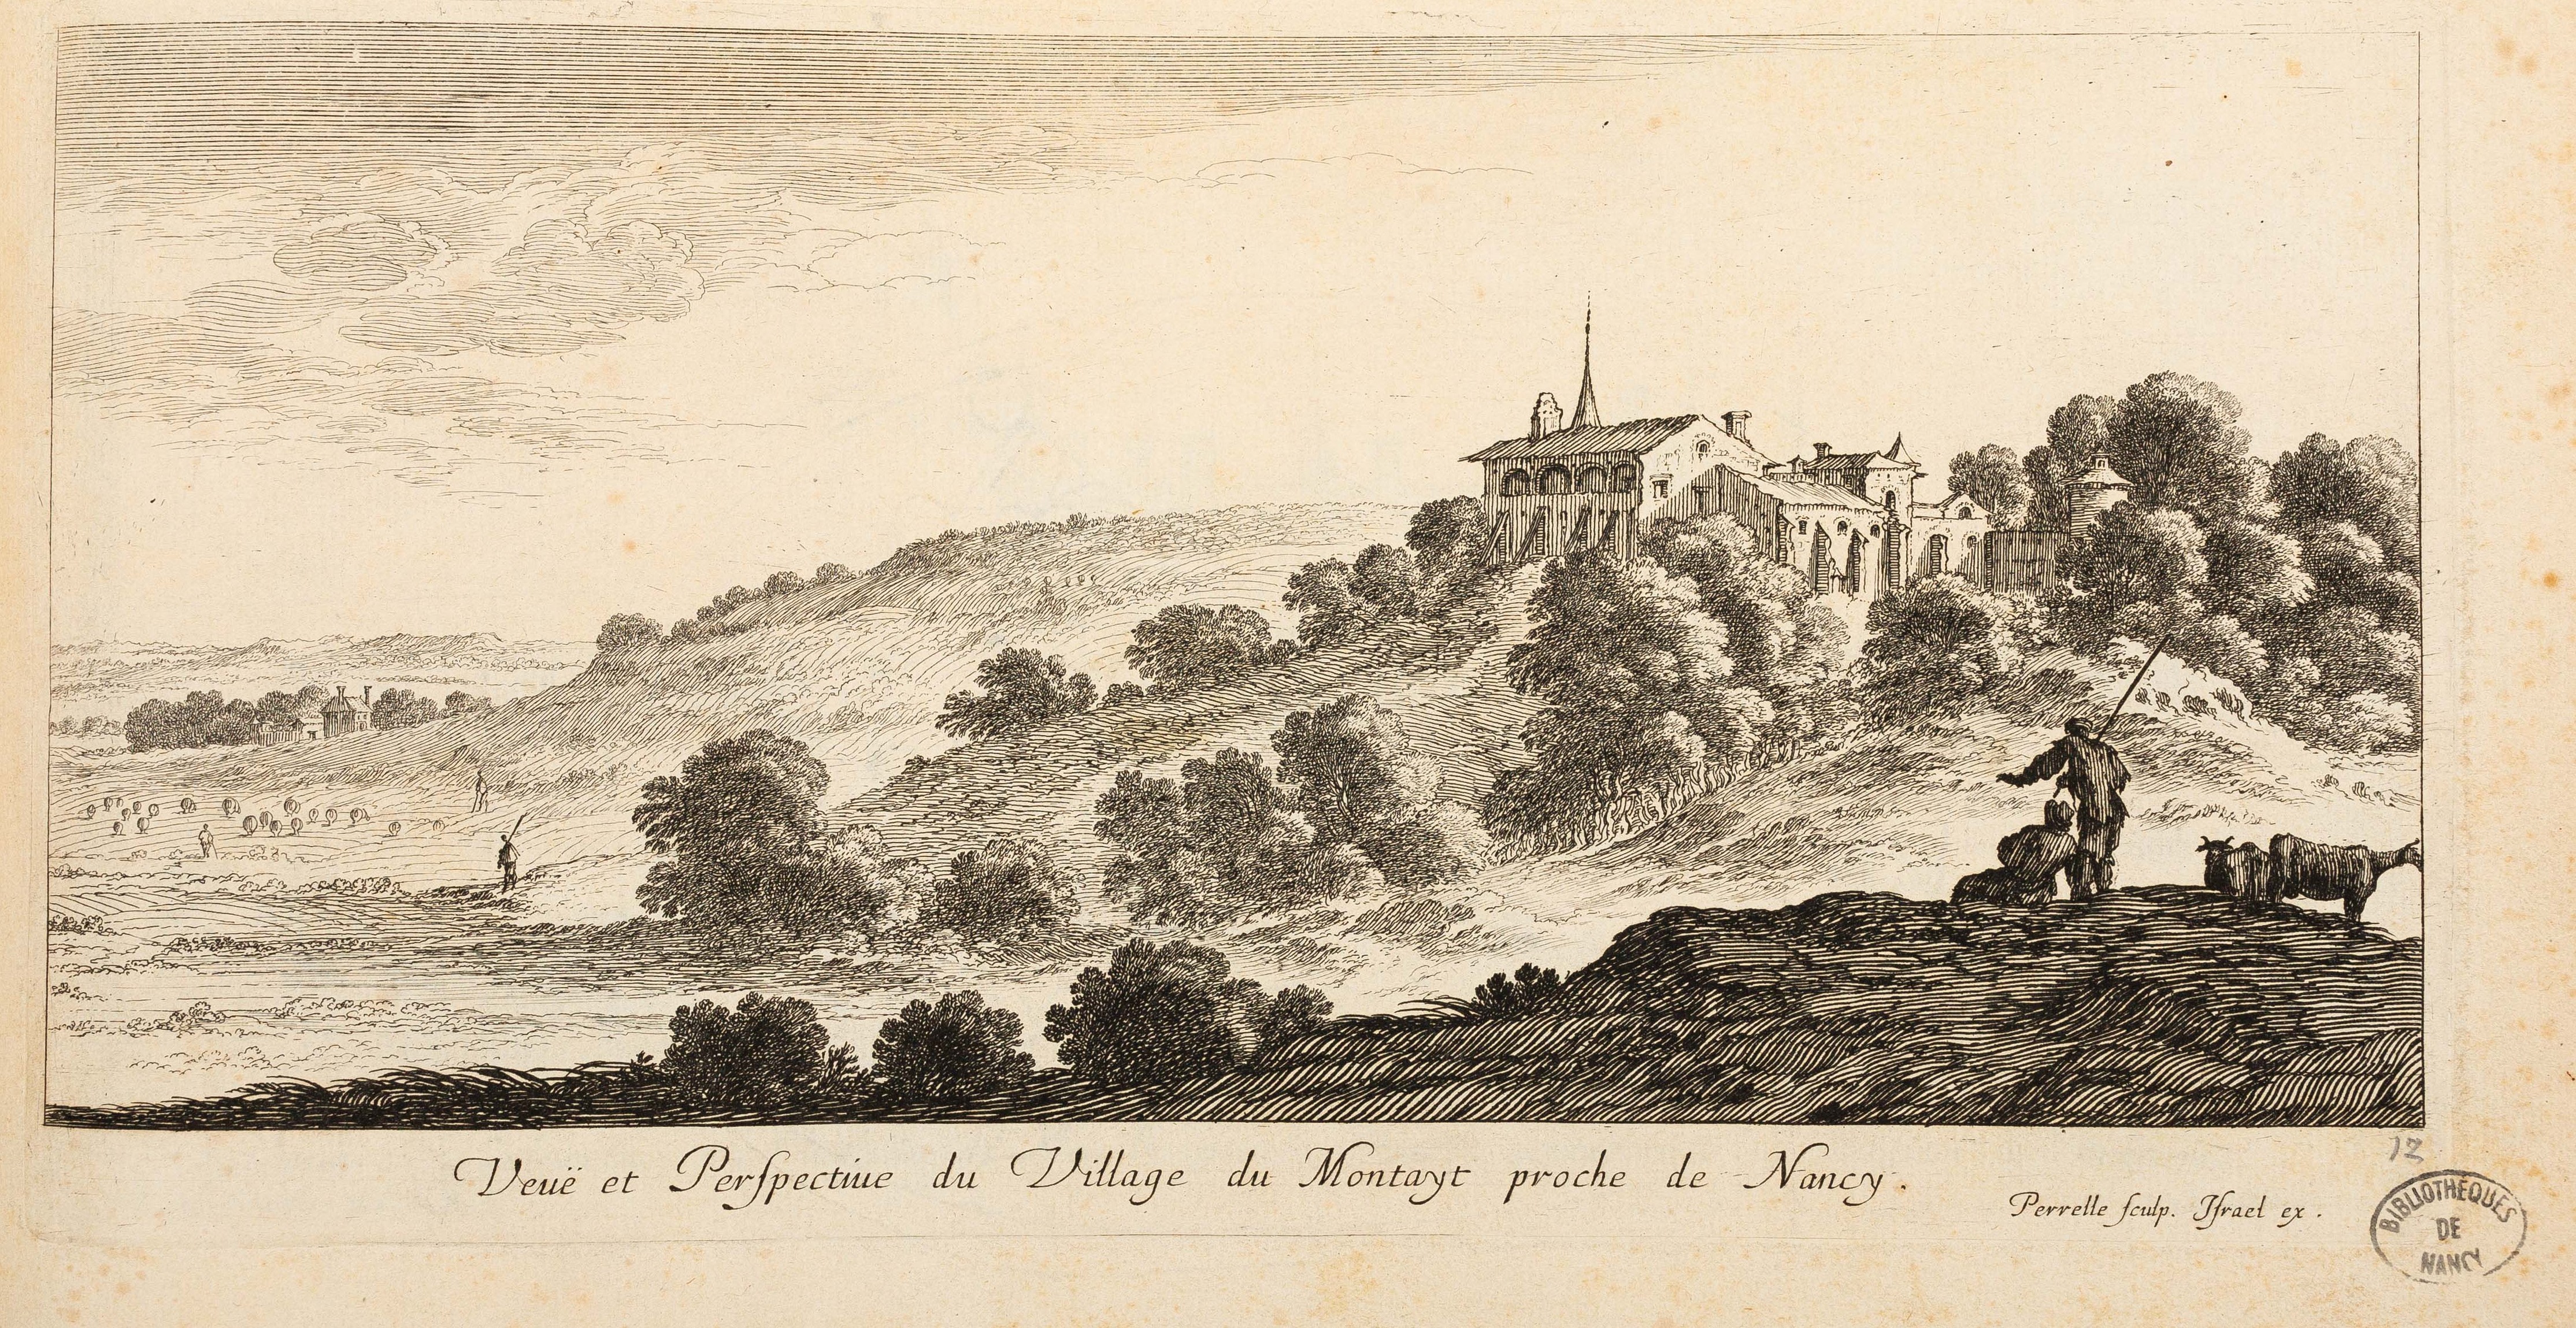 Israël Silvestre : Veuë et Perspectiue du Village du Montayt (Montet) proche de Nancy.